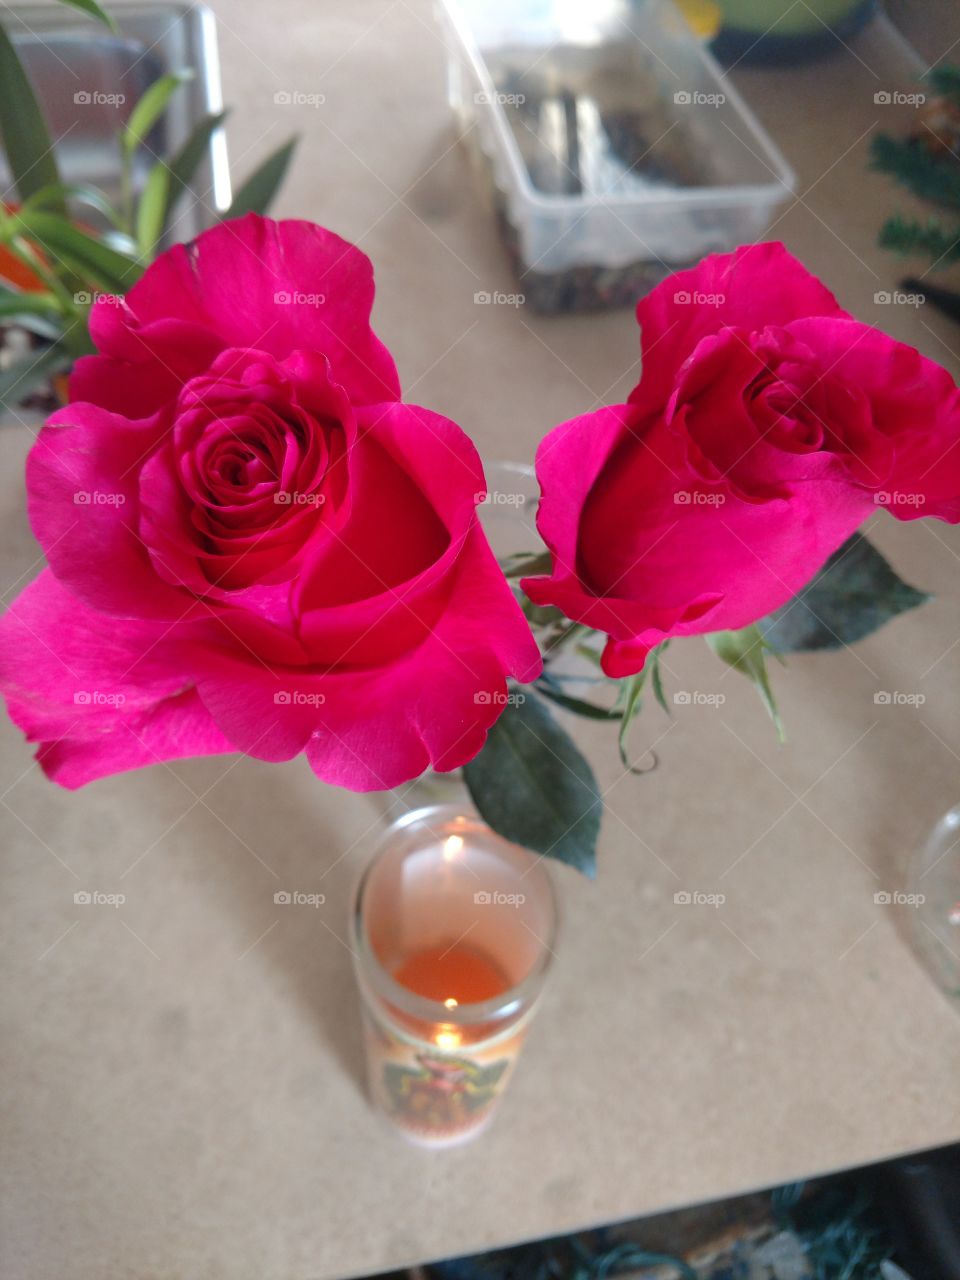 la rosa una flor para espresar amor